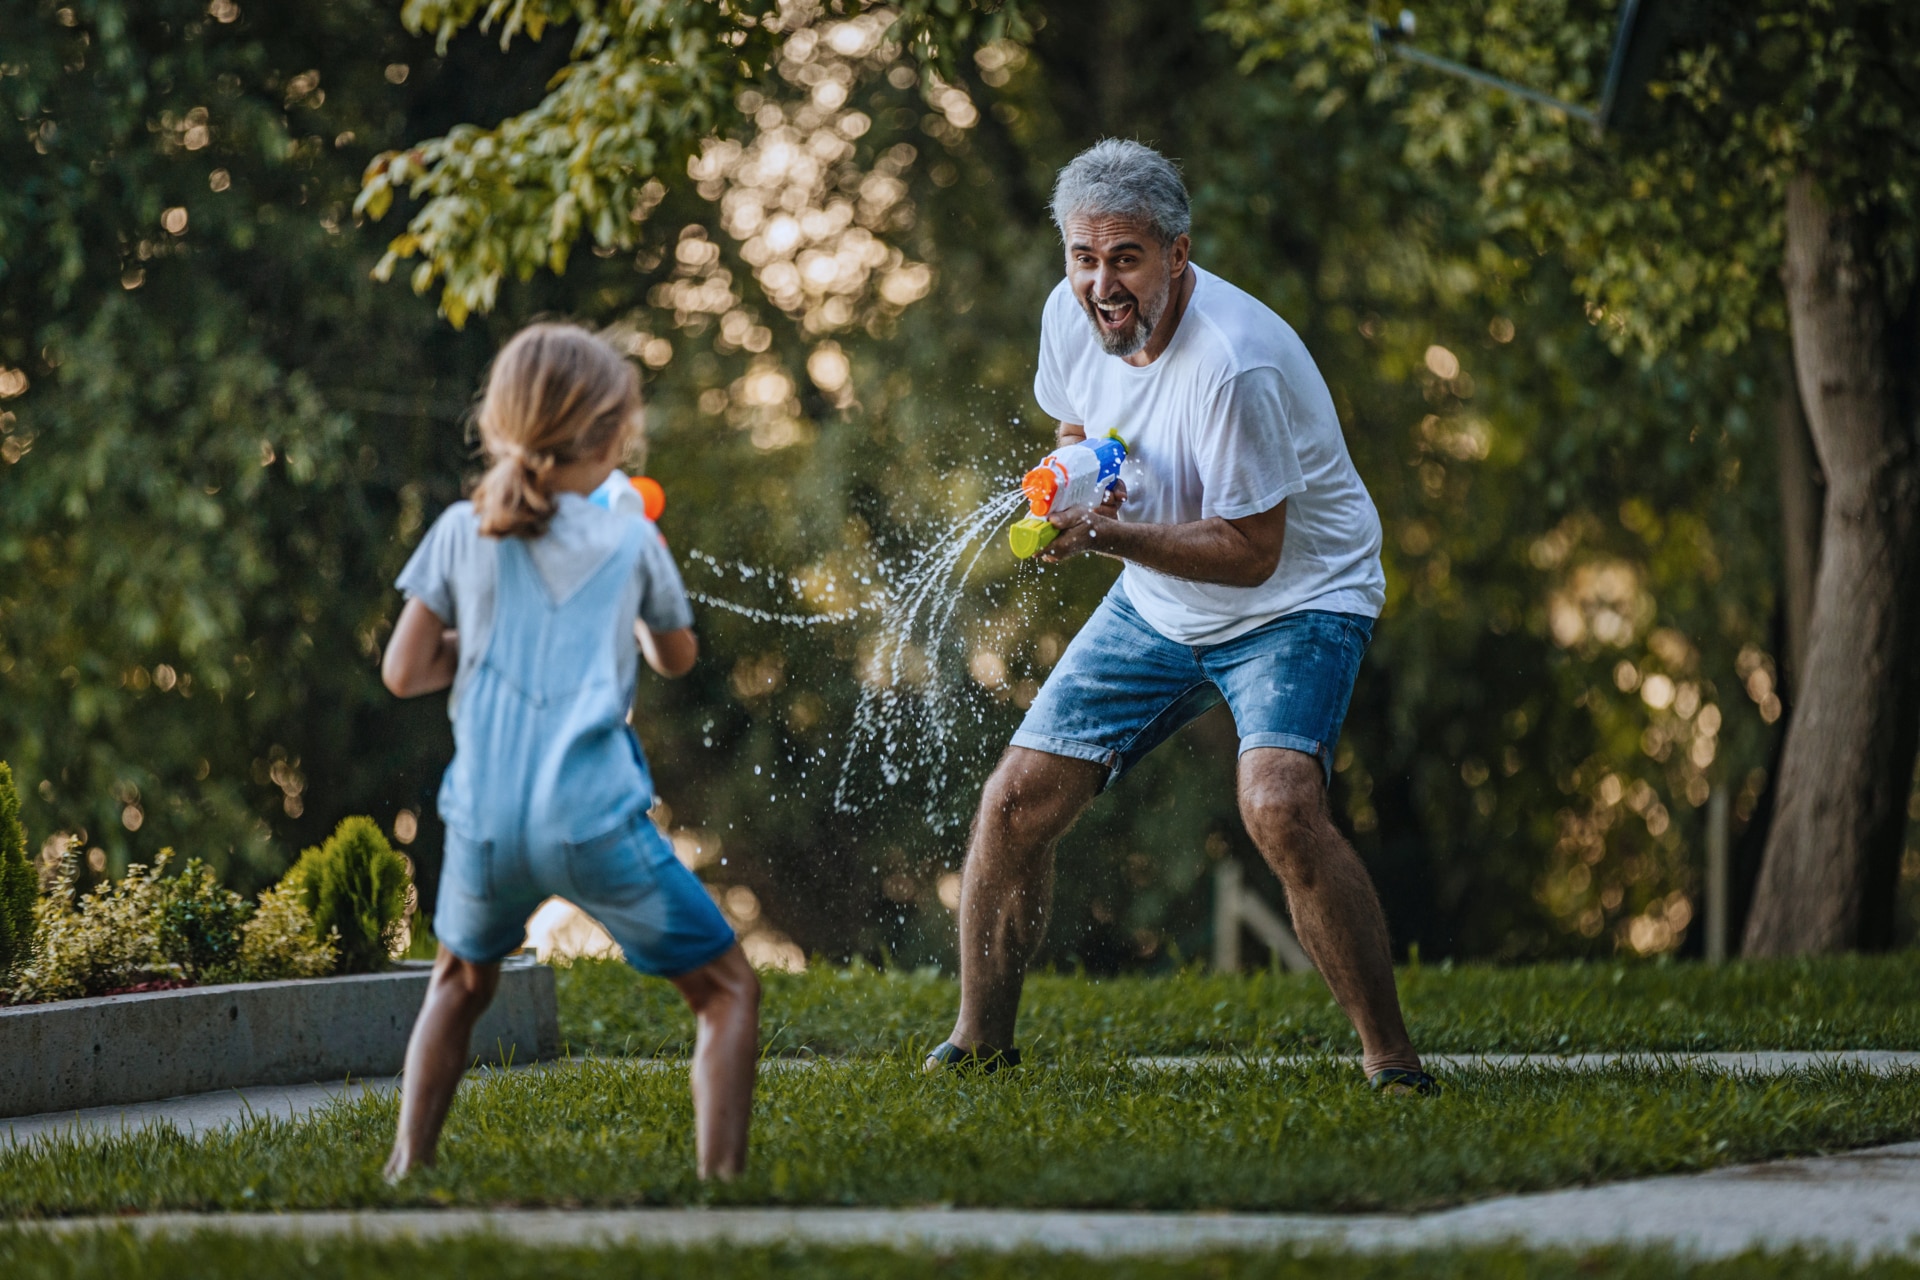 Enkelin und Großvater schießen sich im Garten gegenseitig mit Wasserpistolen ab.